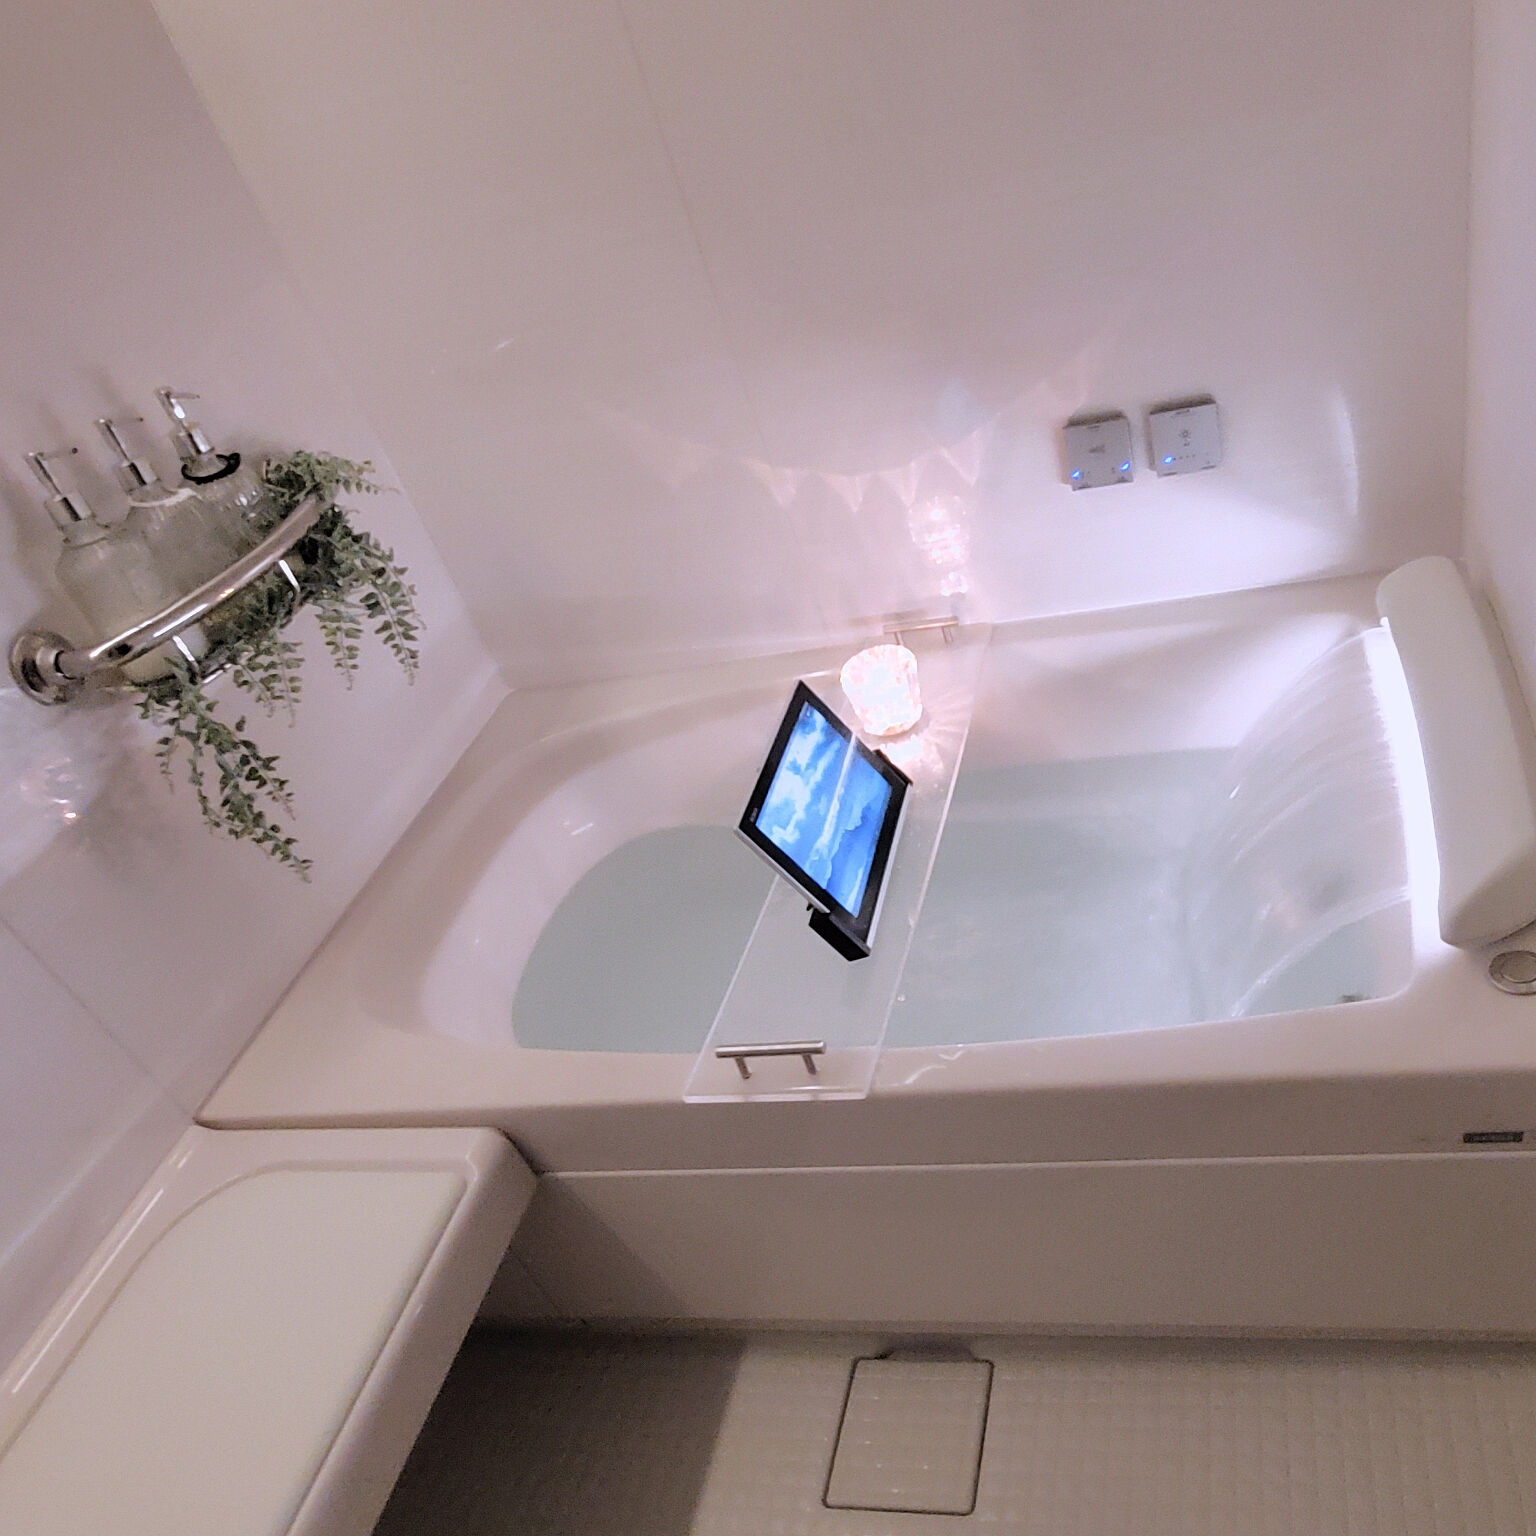 お風呂をもっとリラックスできる空間に。LIXILの「スパージュ」でつくる、ワンランク上の癒しバスルーム